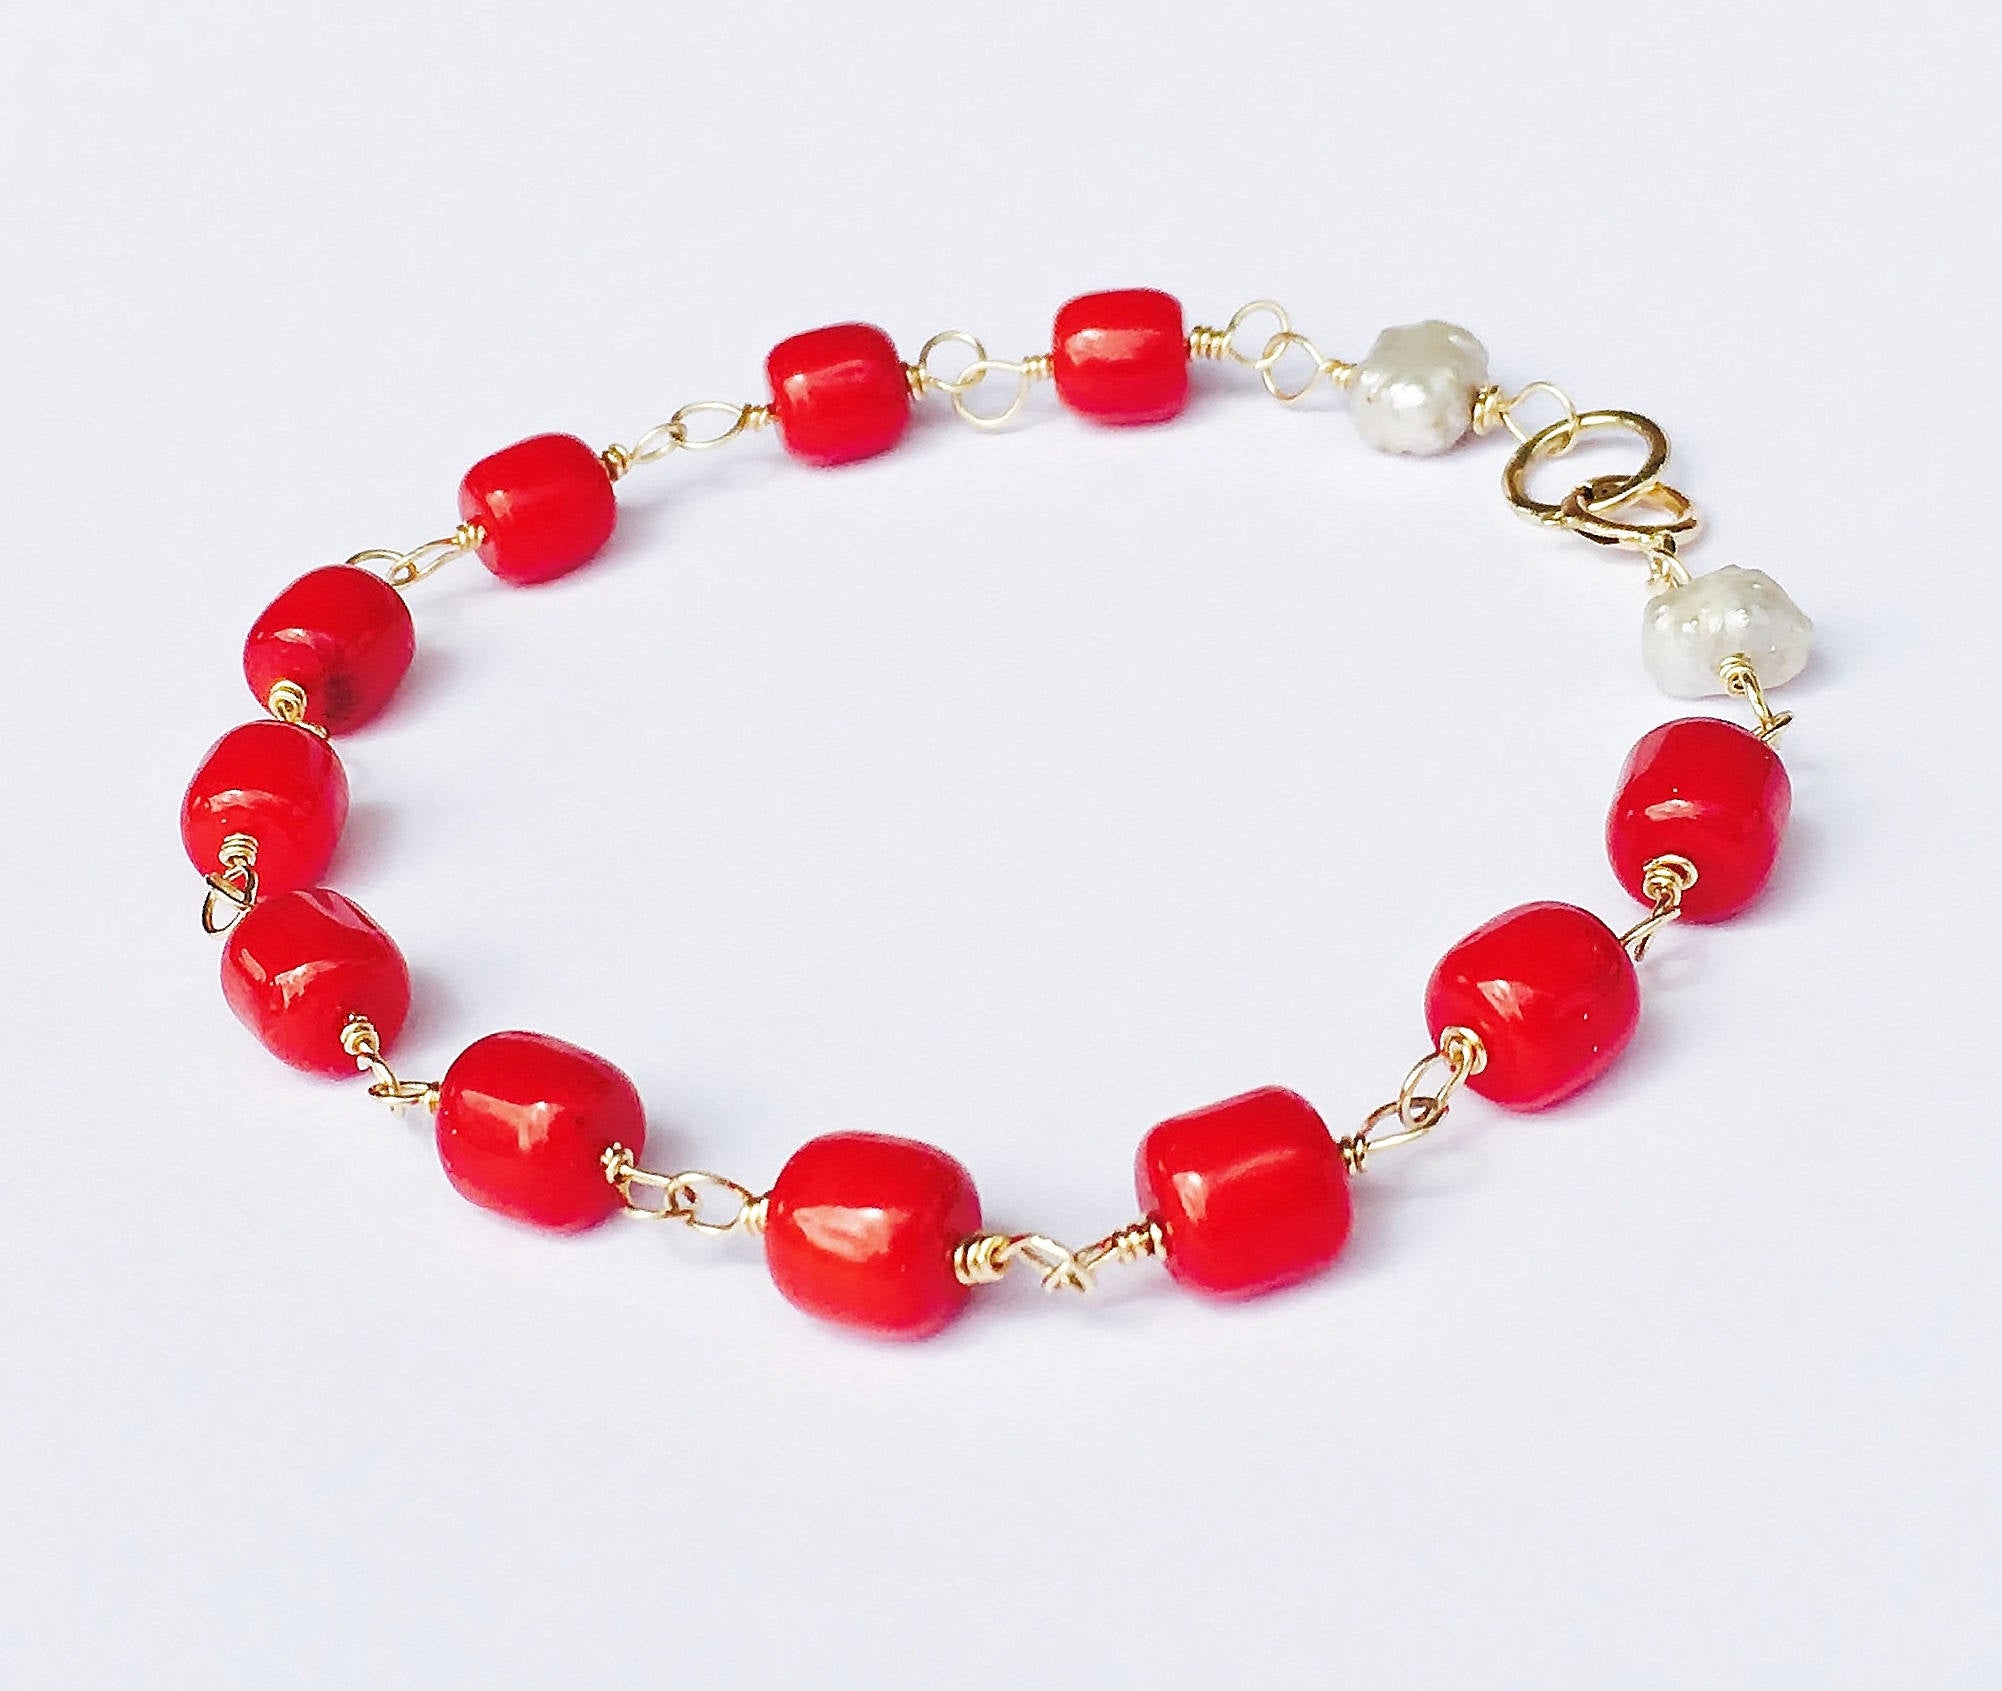 Navajo Red Coral Bracelet - Native American Bracelets, Navajo Jewelry